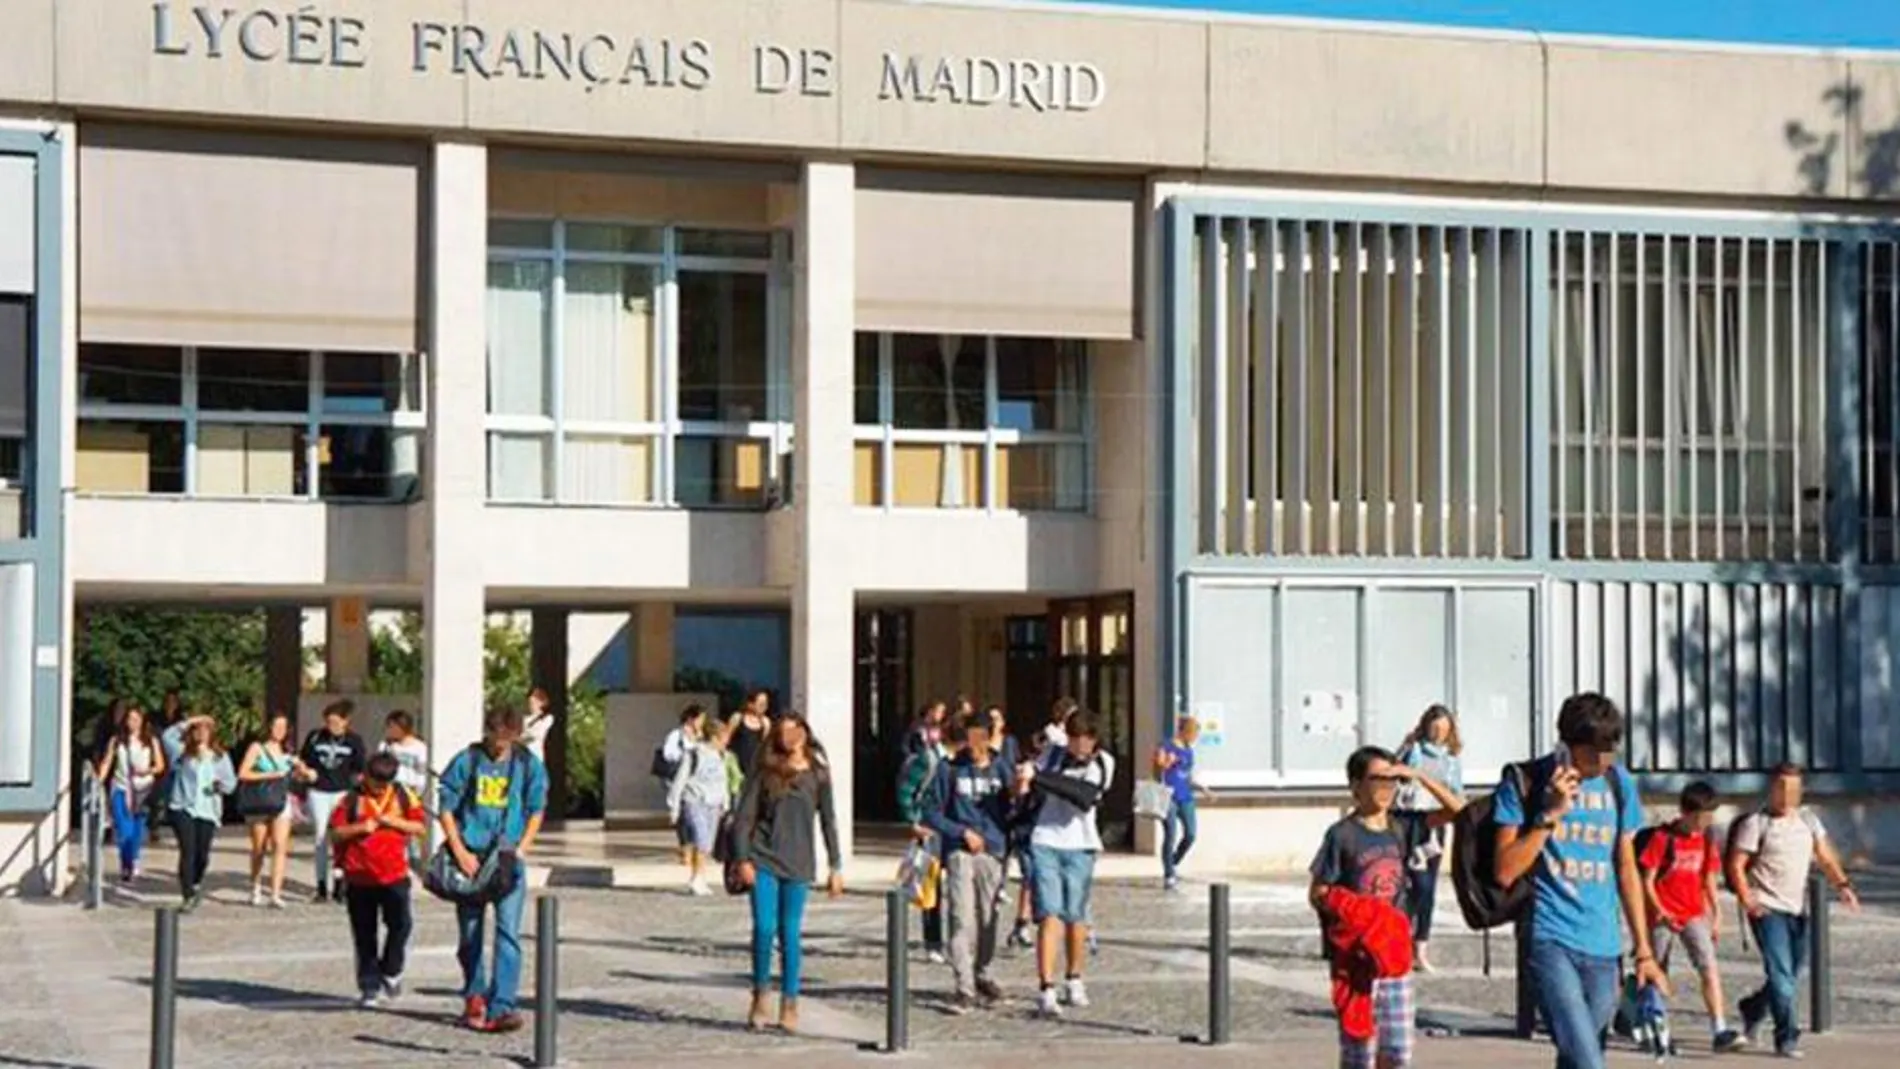 Más de trescientas familias del Liceo Francés de Madrid se unen en una plataforma de afectados para reclamar un diálogo con el prestigioso colegio.